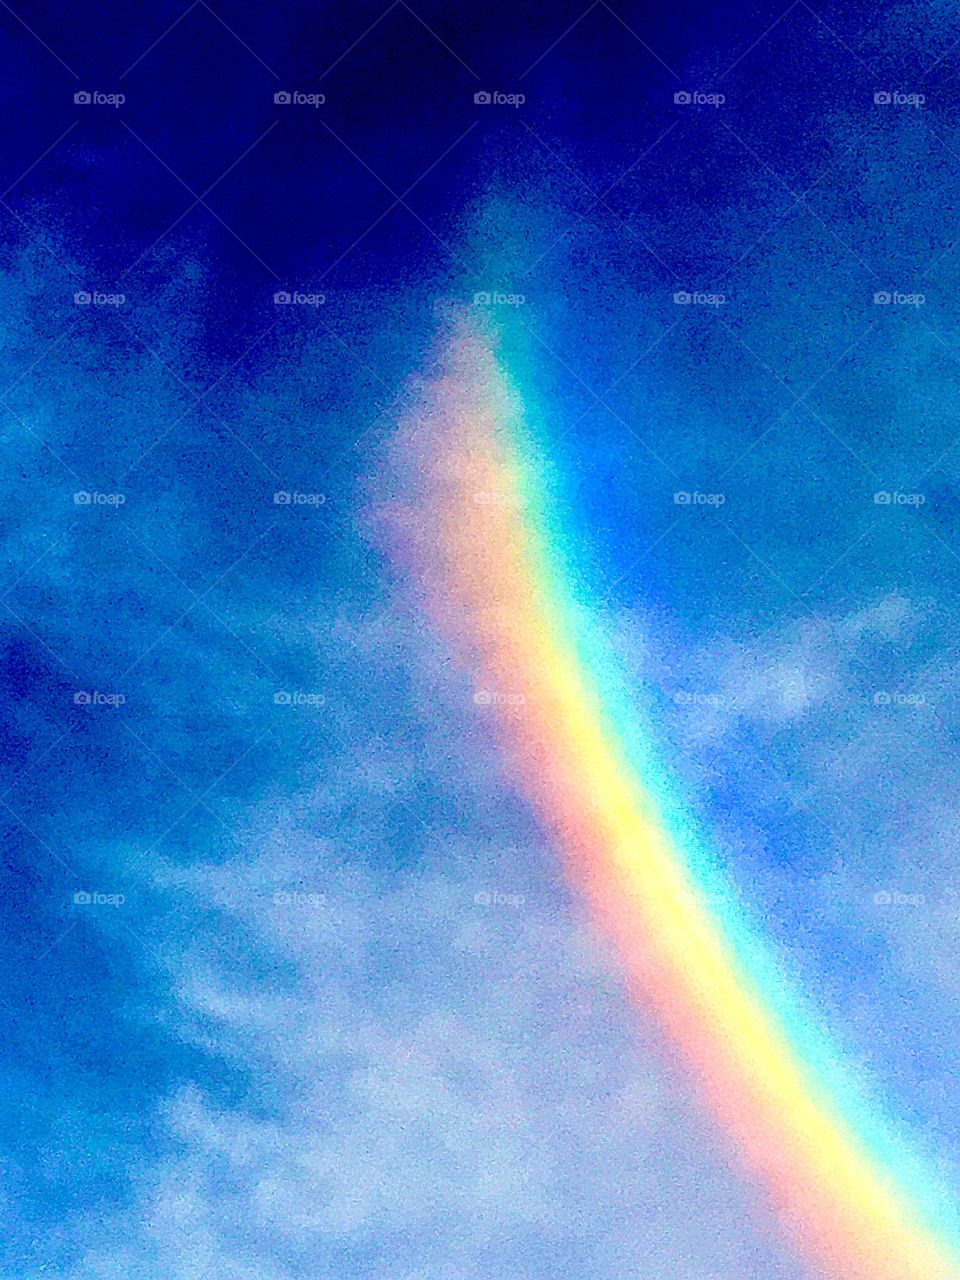 Rainbow side of a sun dog 
Colors of the Rainbow